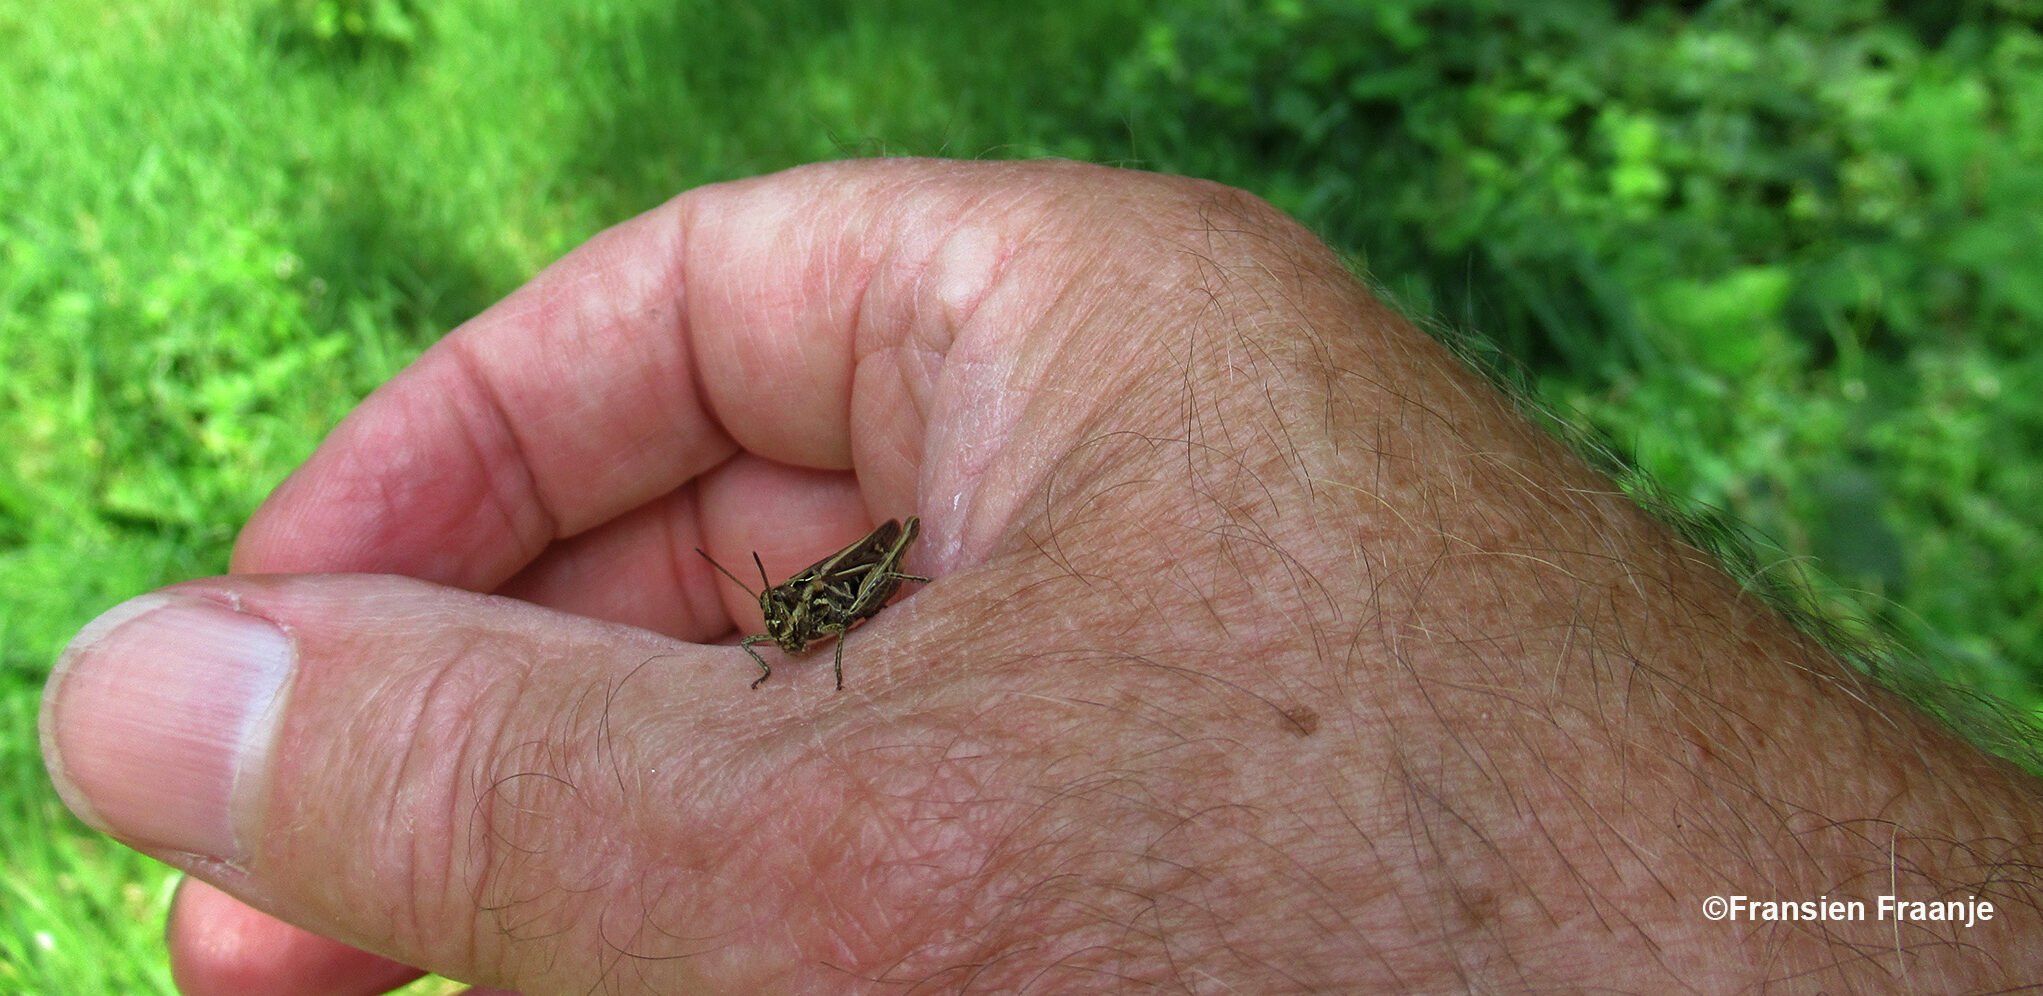 Er sprong ineens een sprinkhaan op mijn hand - Foto: ©Fransien Fraanje